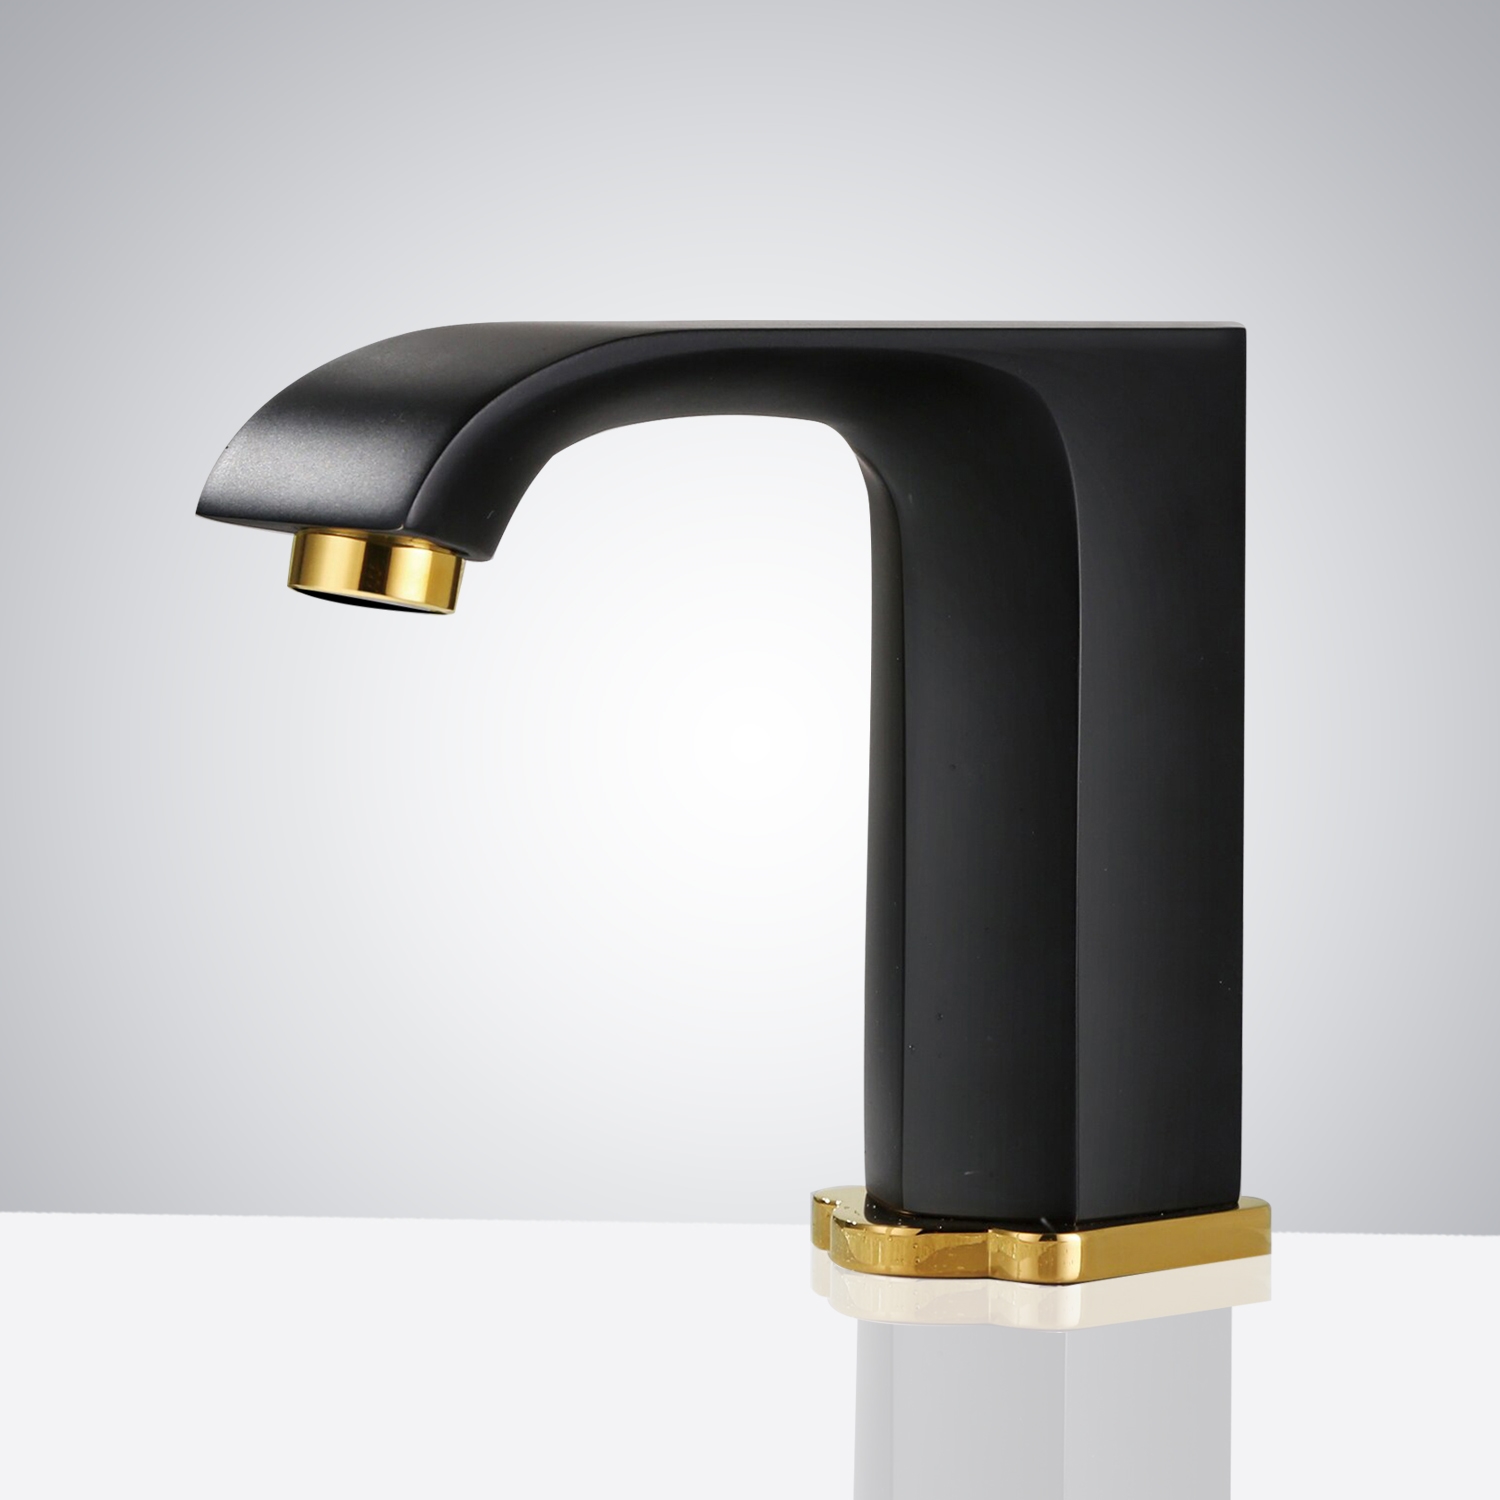 Fontana Commercial Automatic Black Sensor Faucet